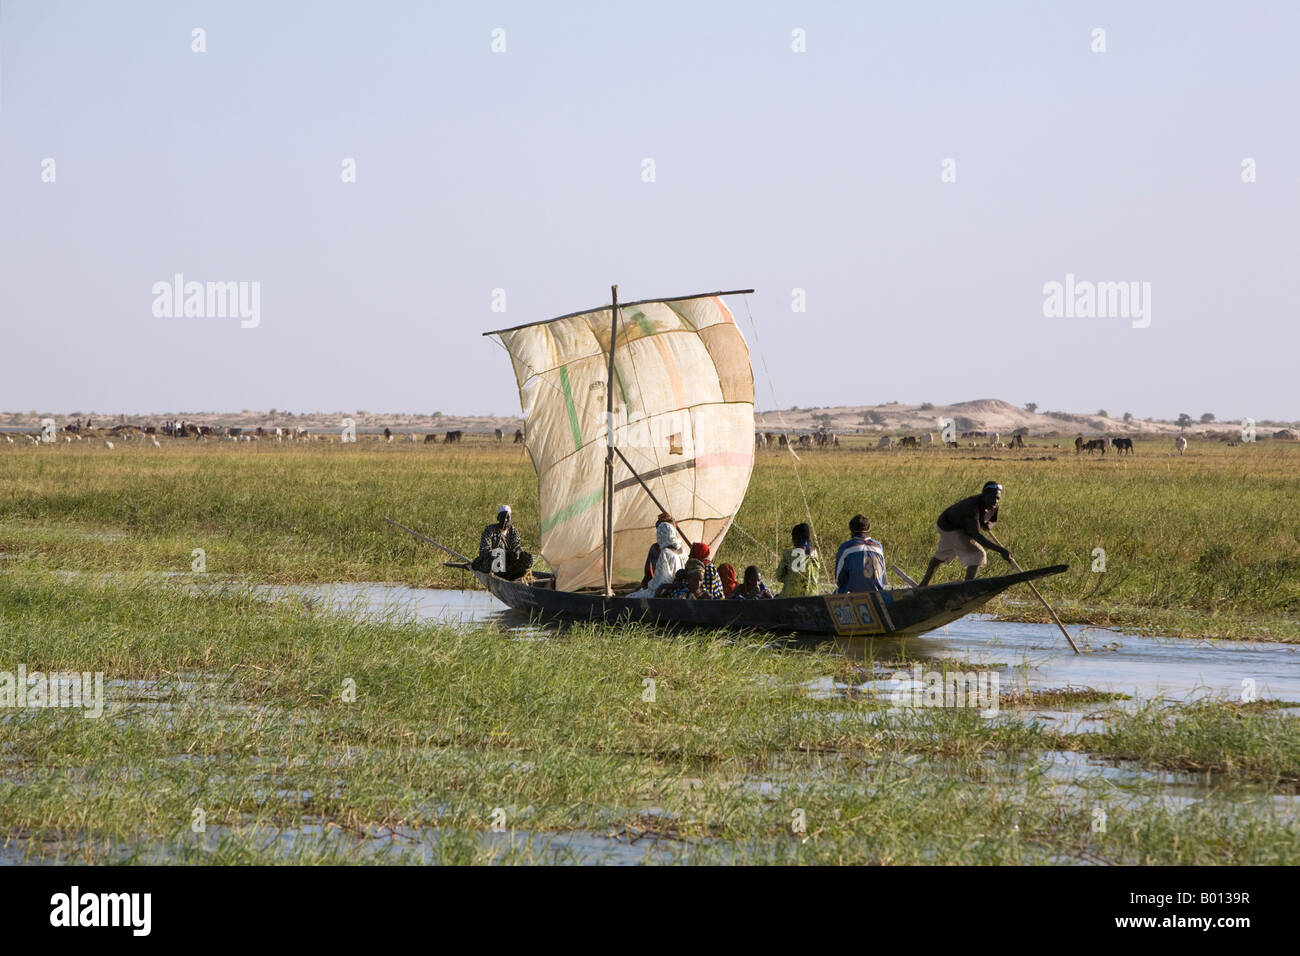 Mali, Niger-Binnendelta. Unterstützt durch eine grobe Segel, Polen ein Fährmann eine Piroge voller Passagiere durch einen grasbewachsenen Kanal. Stockfoto